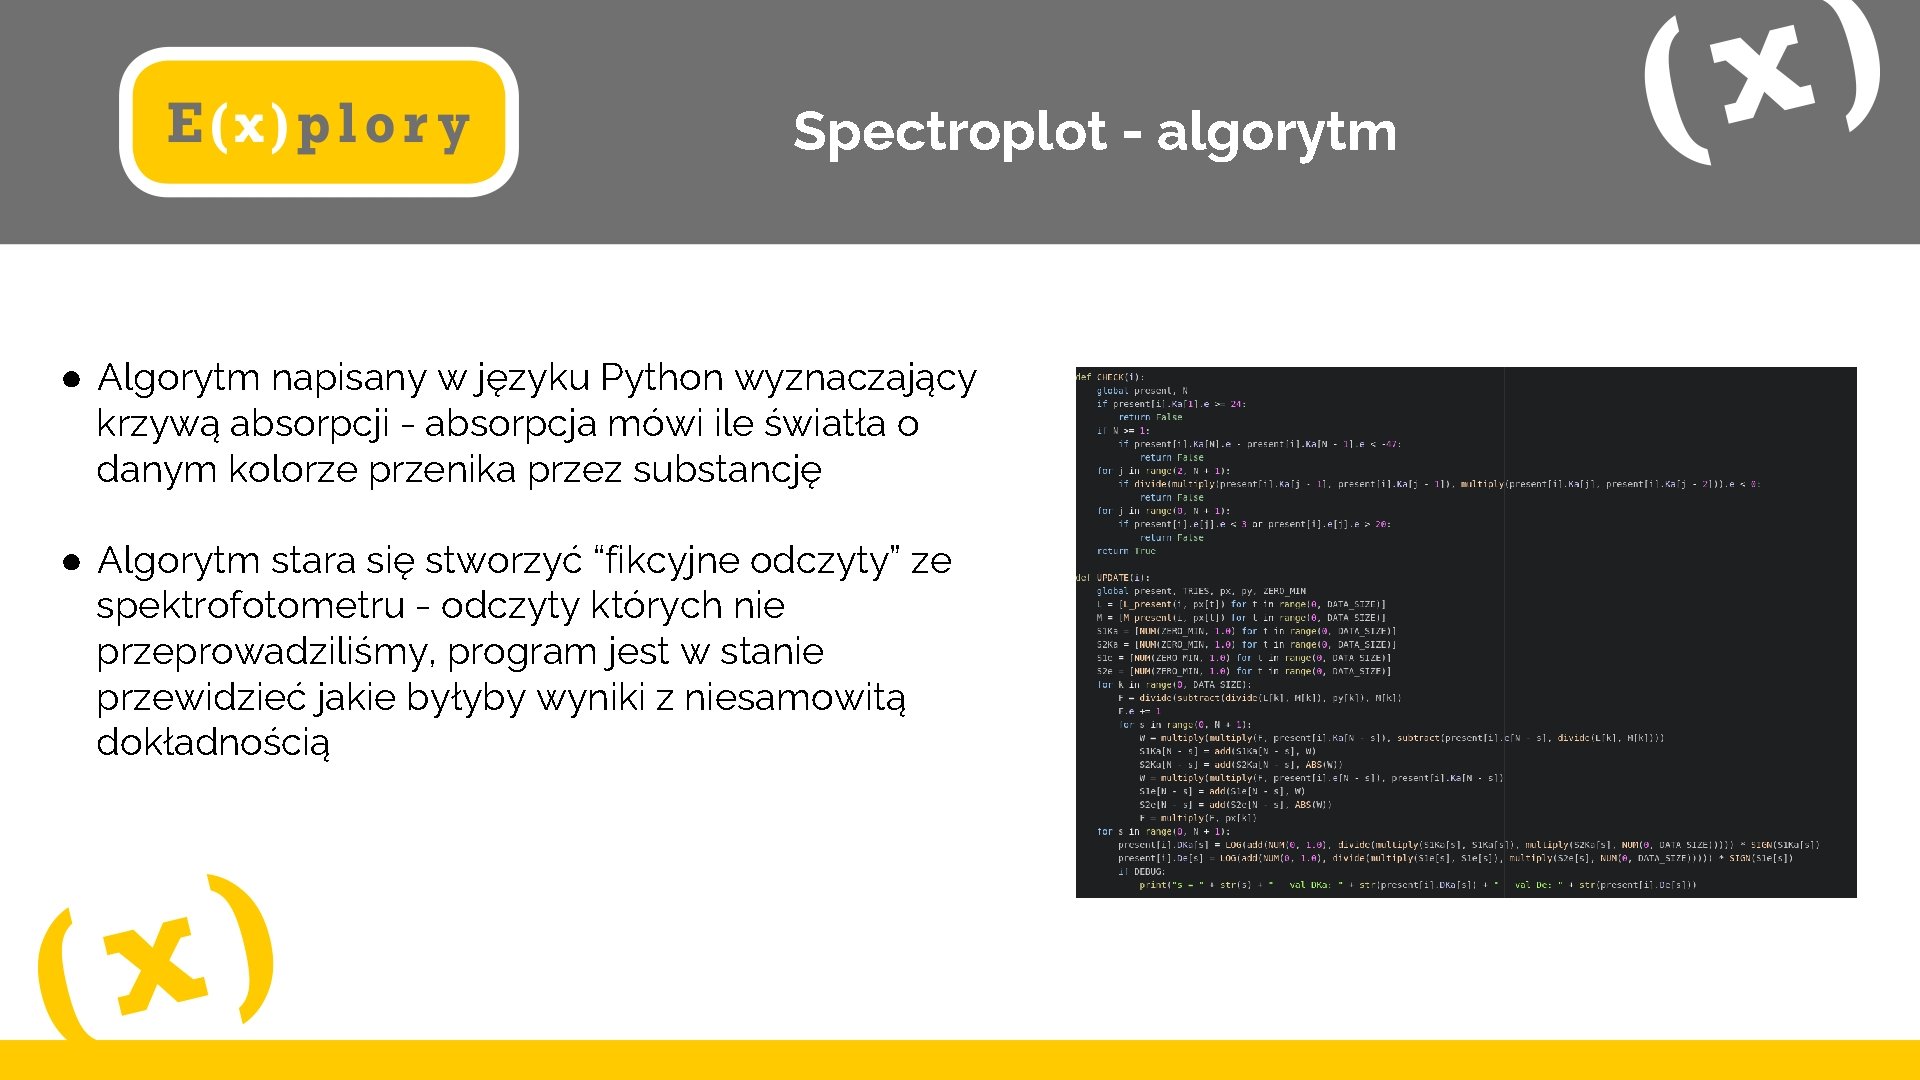 Spectroplot - algorytm ● Algorytm napisany w języku Python wyznaczający krzywą absorpcji - absorpcja